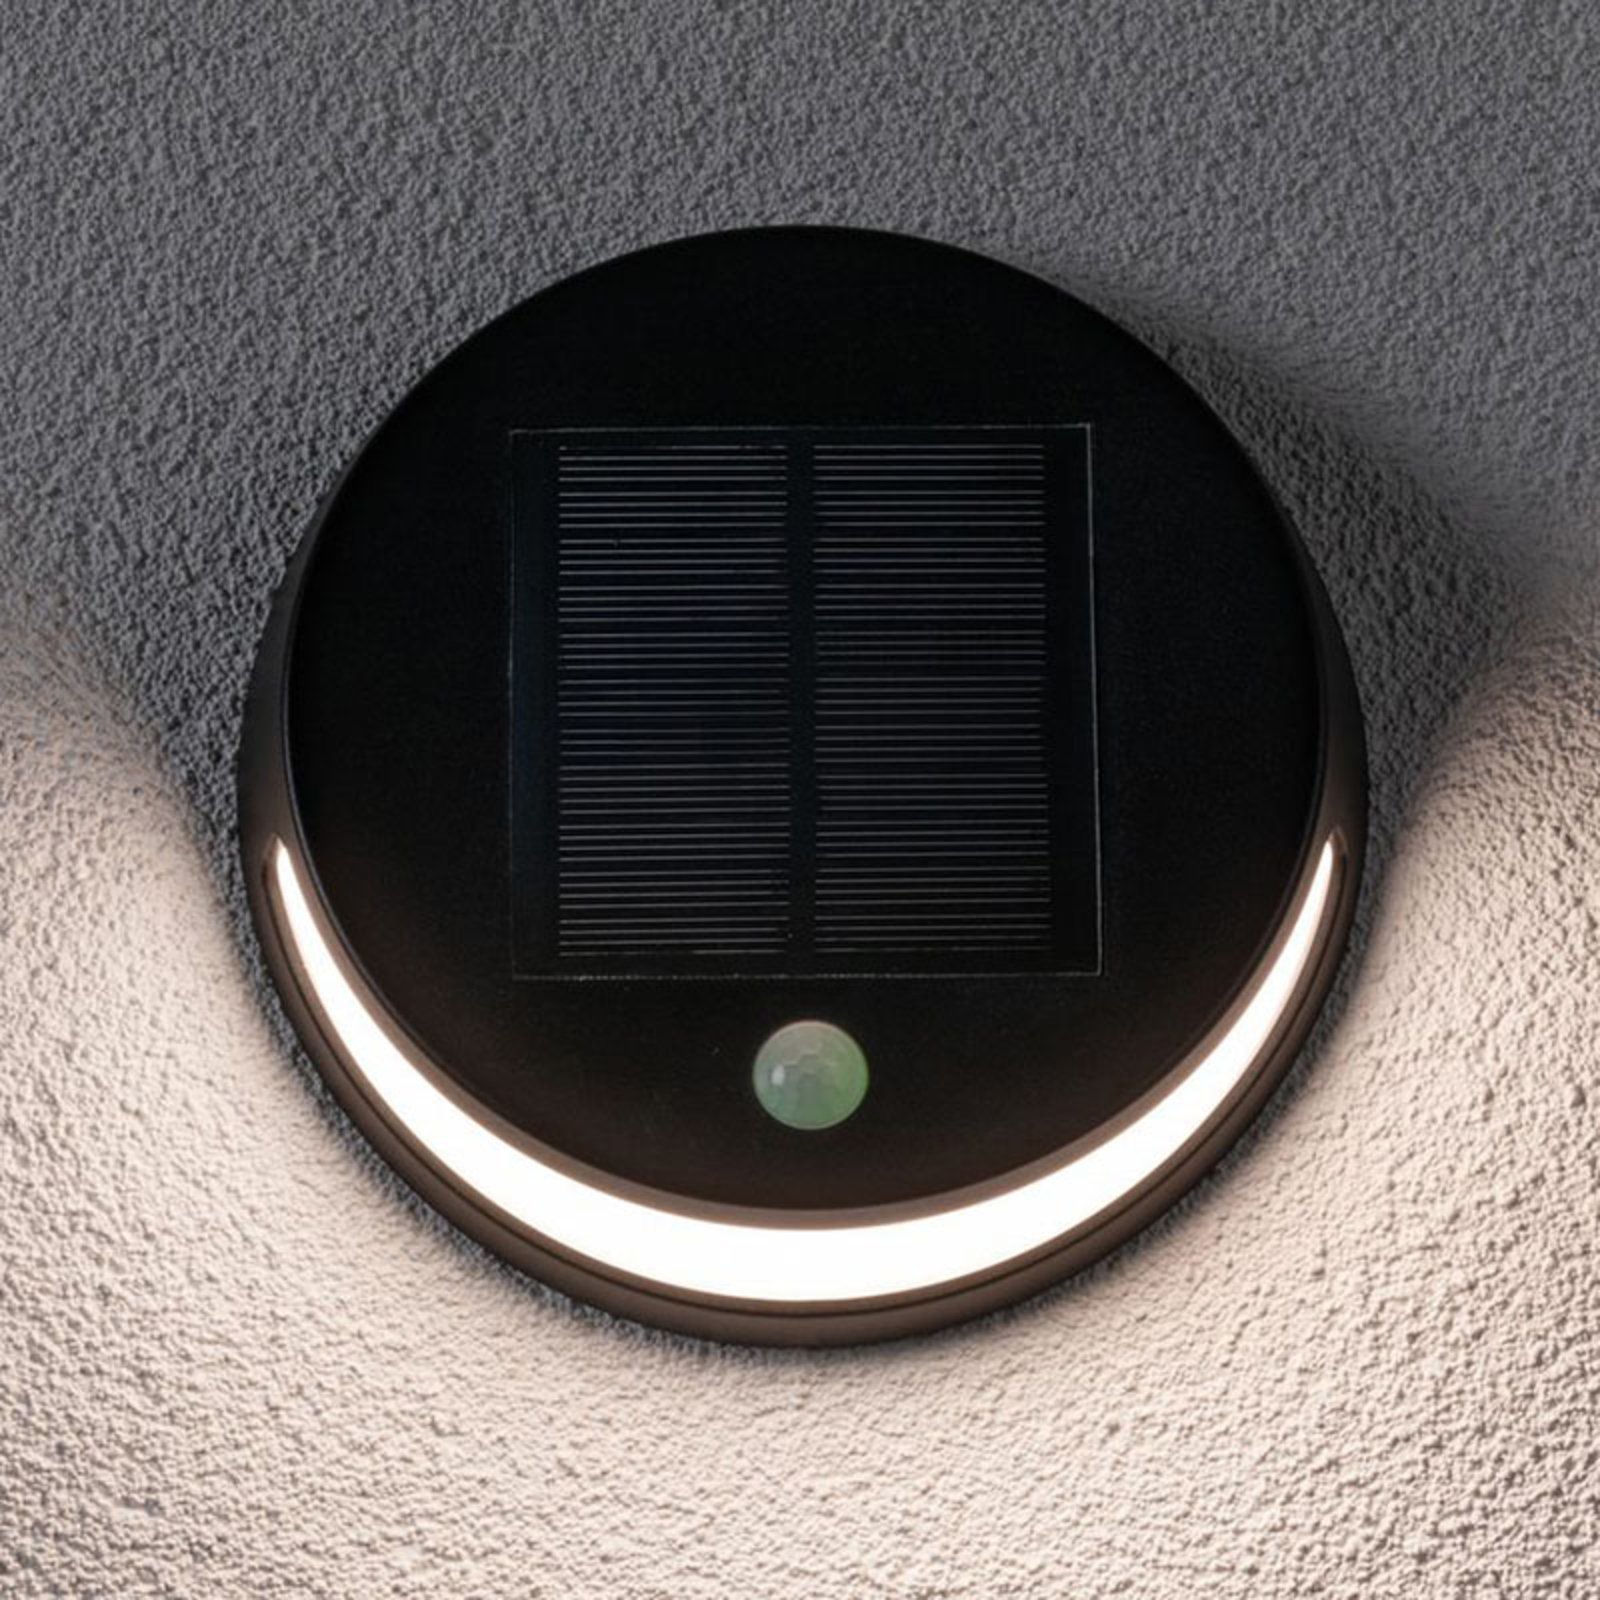 Paulmann LED-Solar-Wandlampe Helena mit Sensor